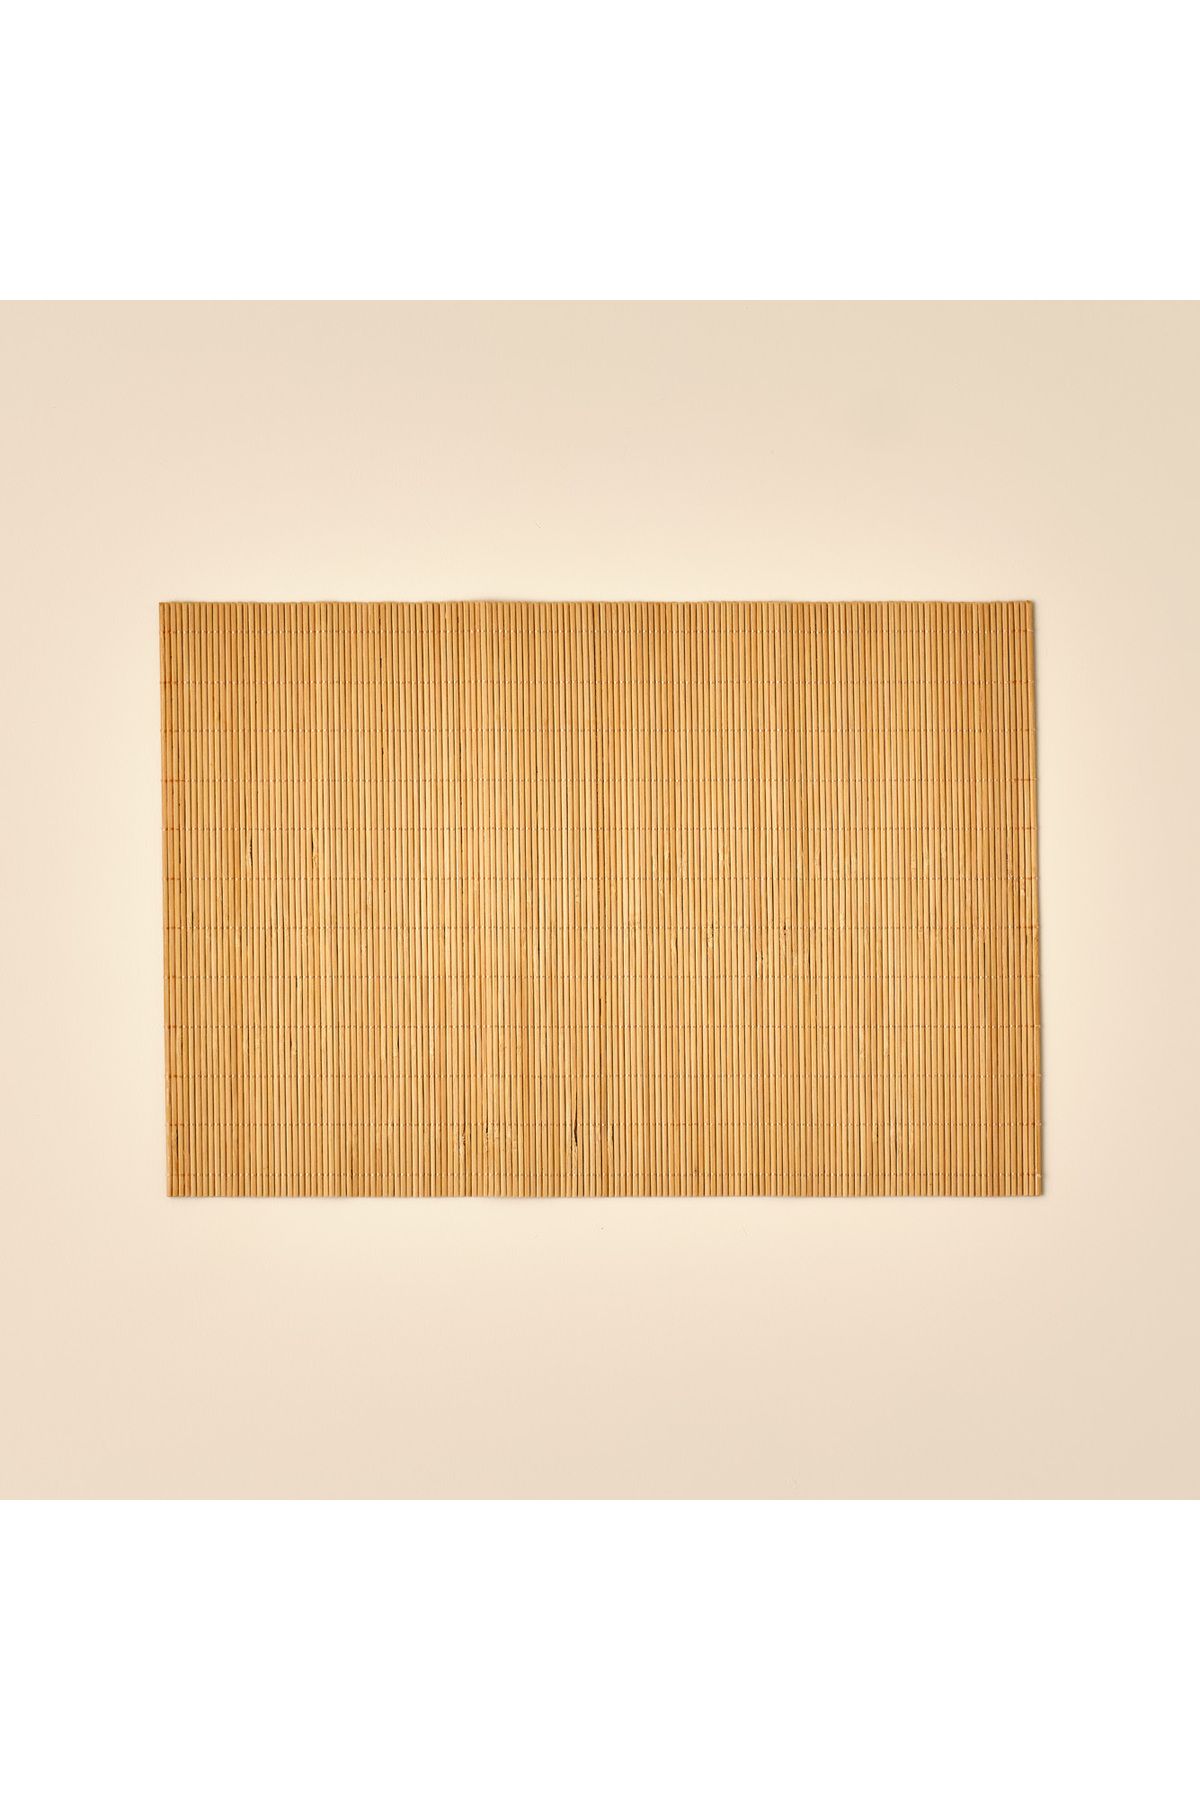 Bella Maison Maira Bambu Amerikan Servis Kahverengi (30x45 cm)